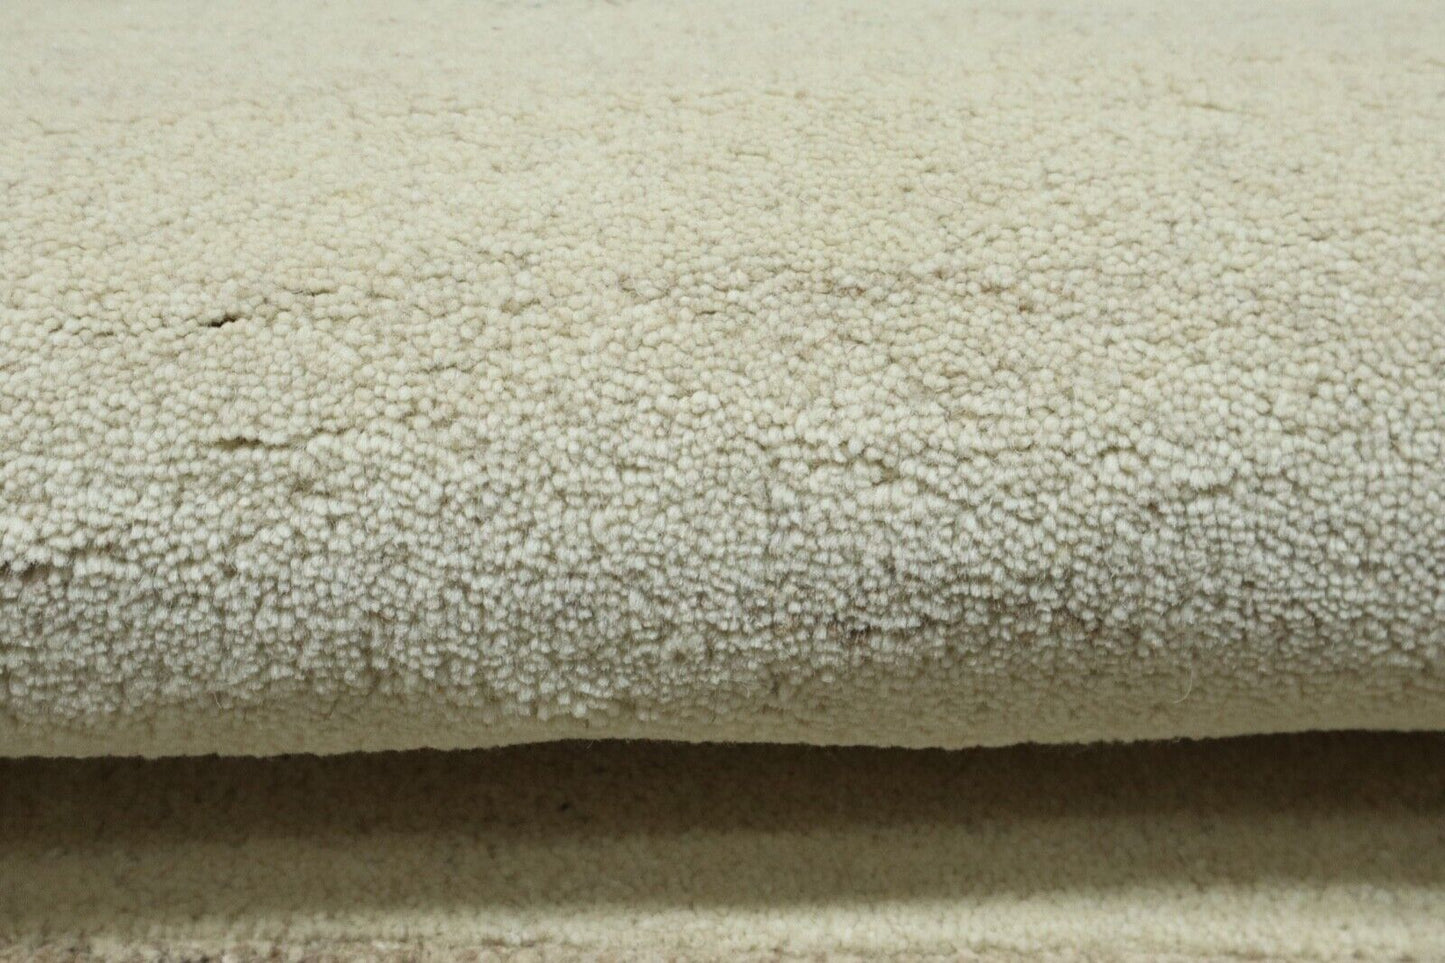 Gabbeh Teppich 100% Wolle 70X140 cm Handarbeit Beige Handgetuftet T1034